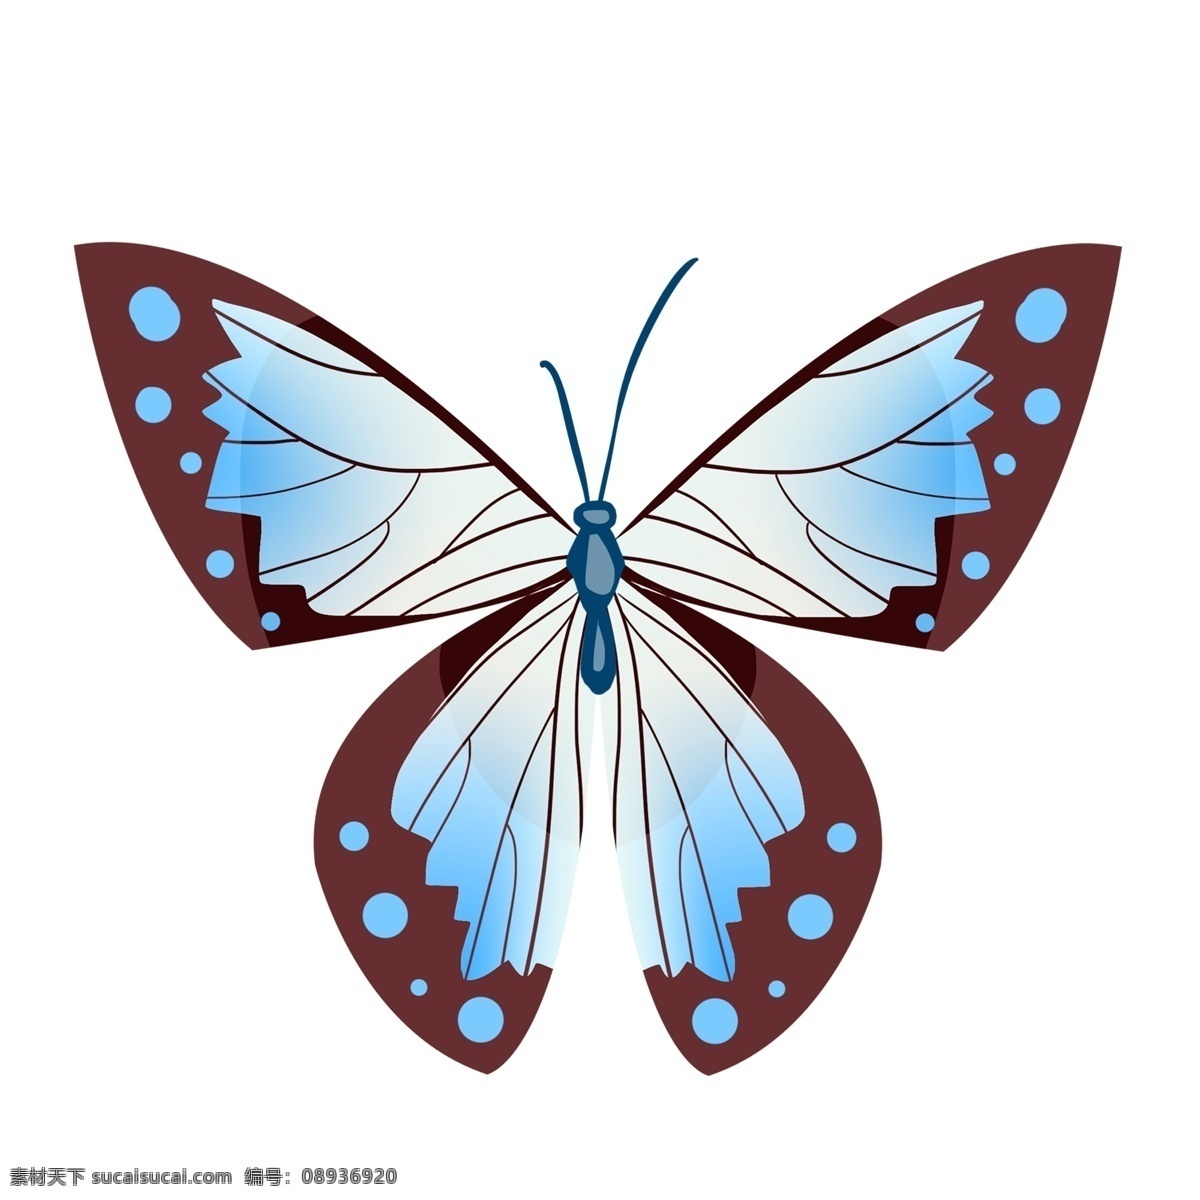 蓝色 蝴蝶 动物 插画 漂亮的蝴蝶 卡通插画 蝴蝶插画 益虫 蓝色的蝴蝶 动物插画 动物蝴蝶 昆虫